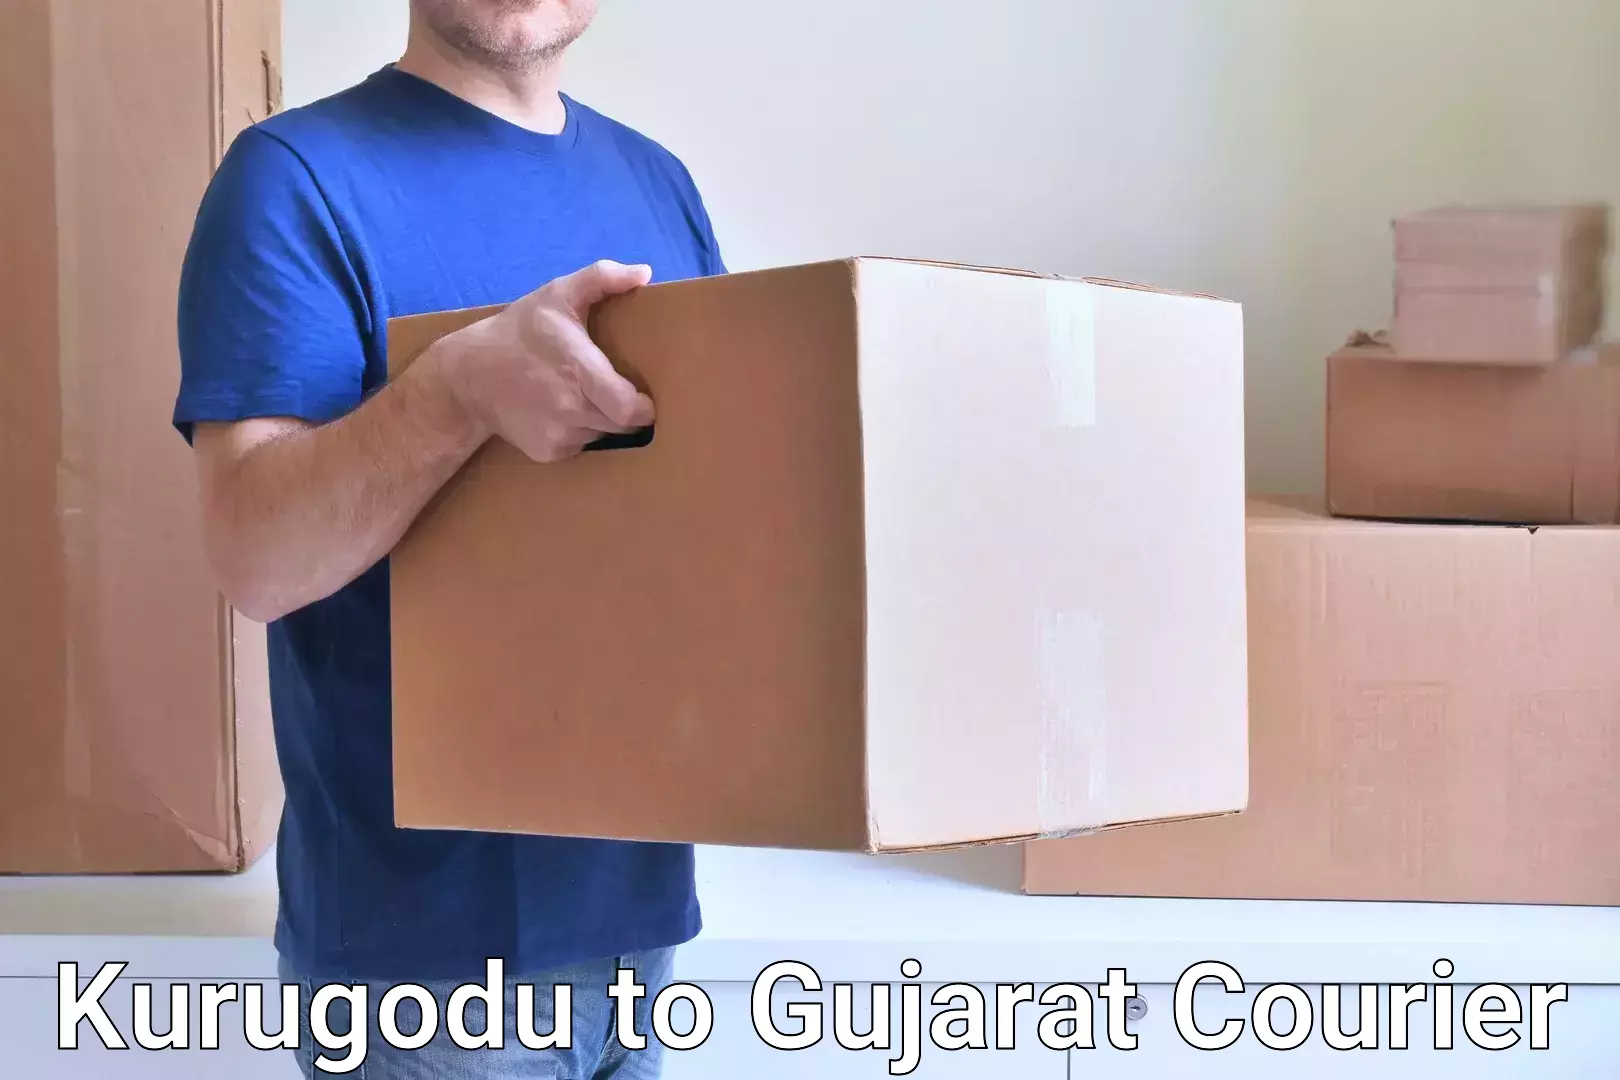 Large-scale shipping solutions Kurugodu to Ahmedabad